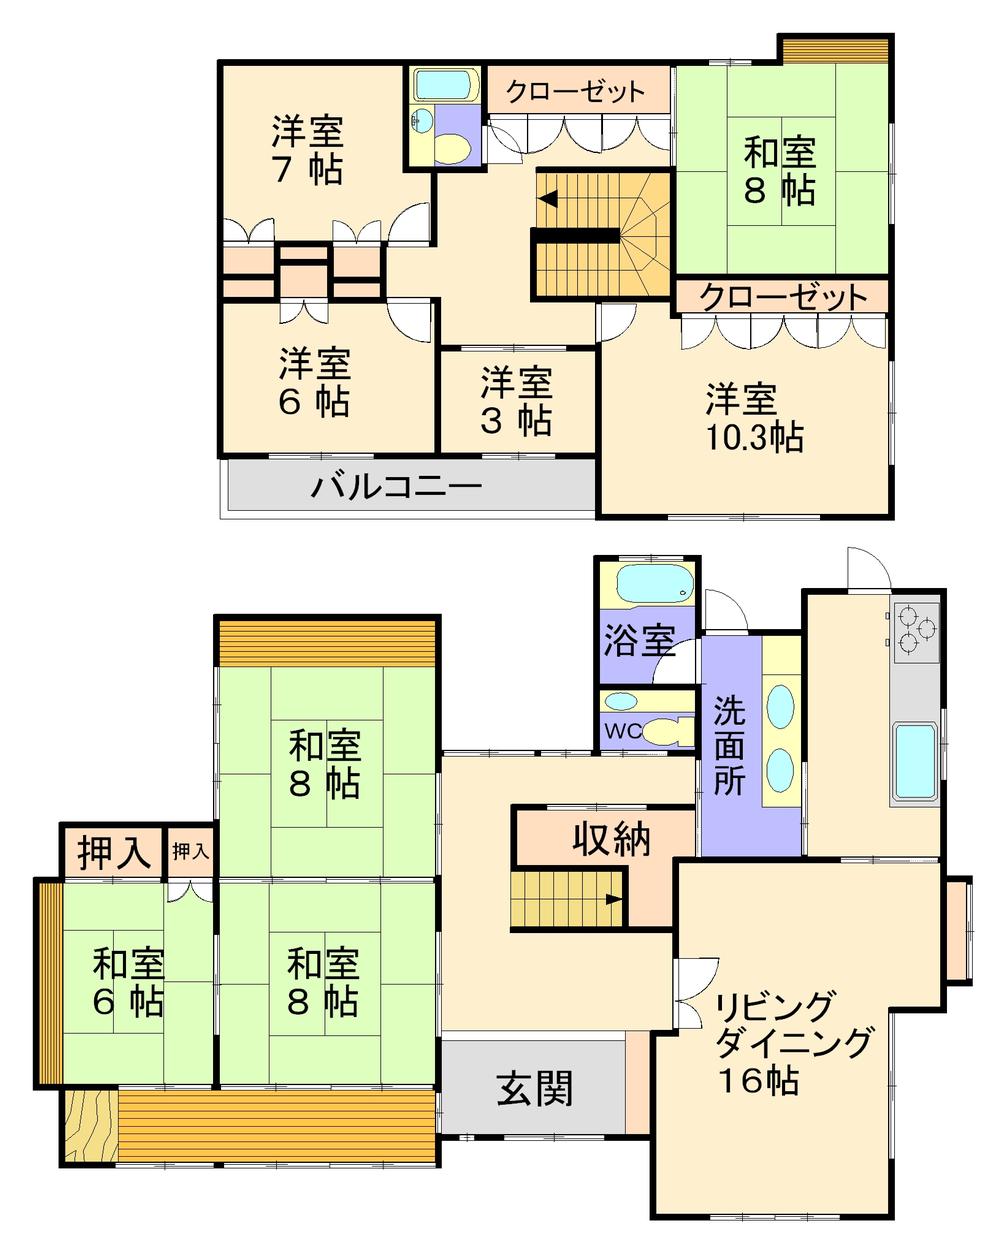 Floor plan. 48,500,000 yen, 7LDK + S (storeroom), Land area 1,274.85 sq m , Building area 205.66 sq m